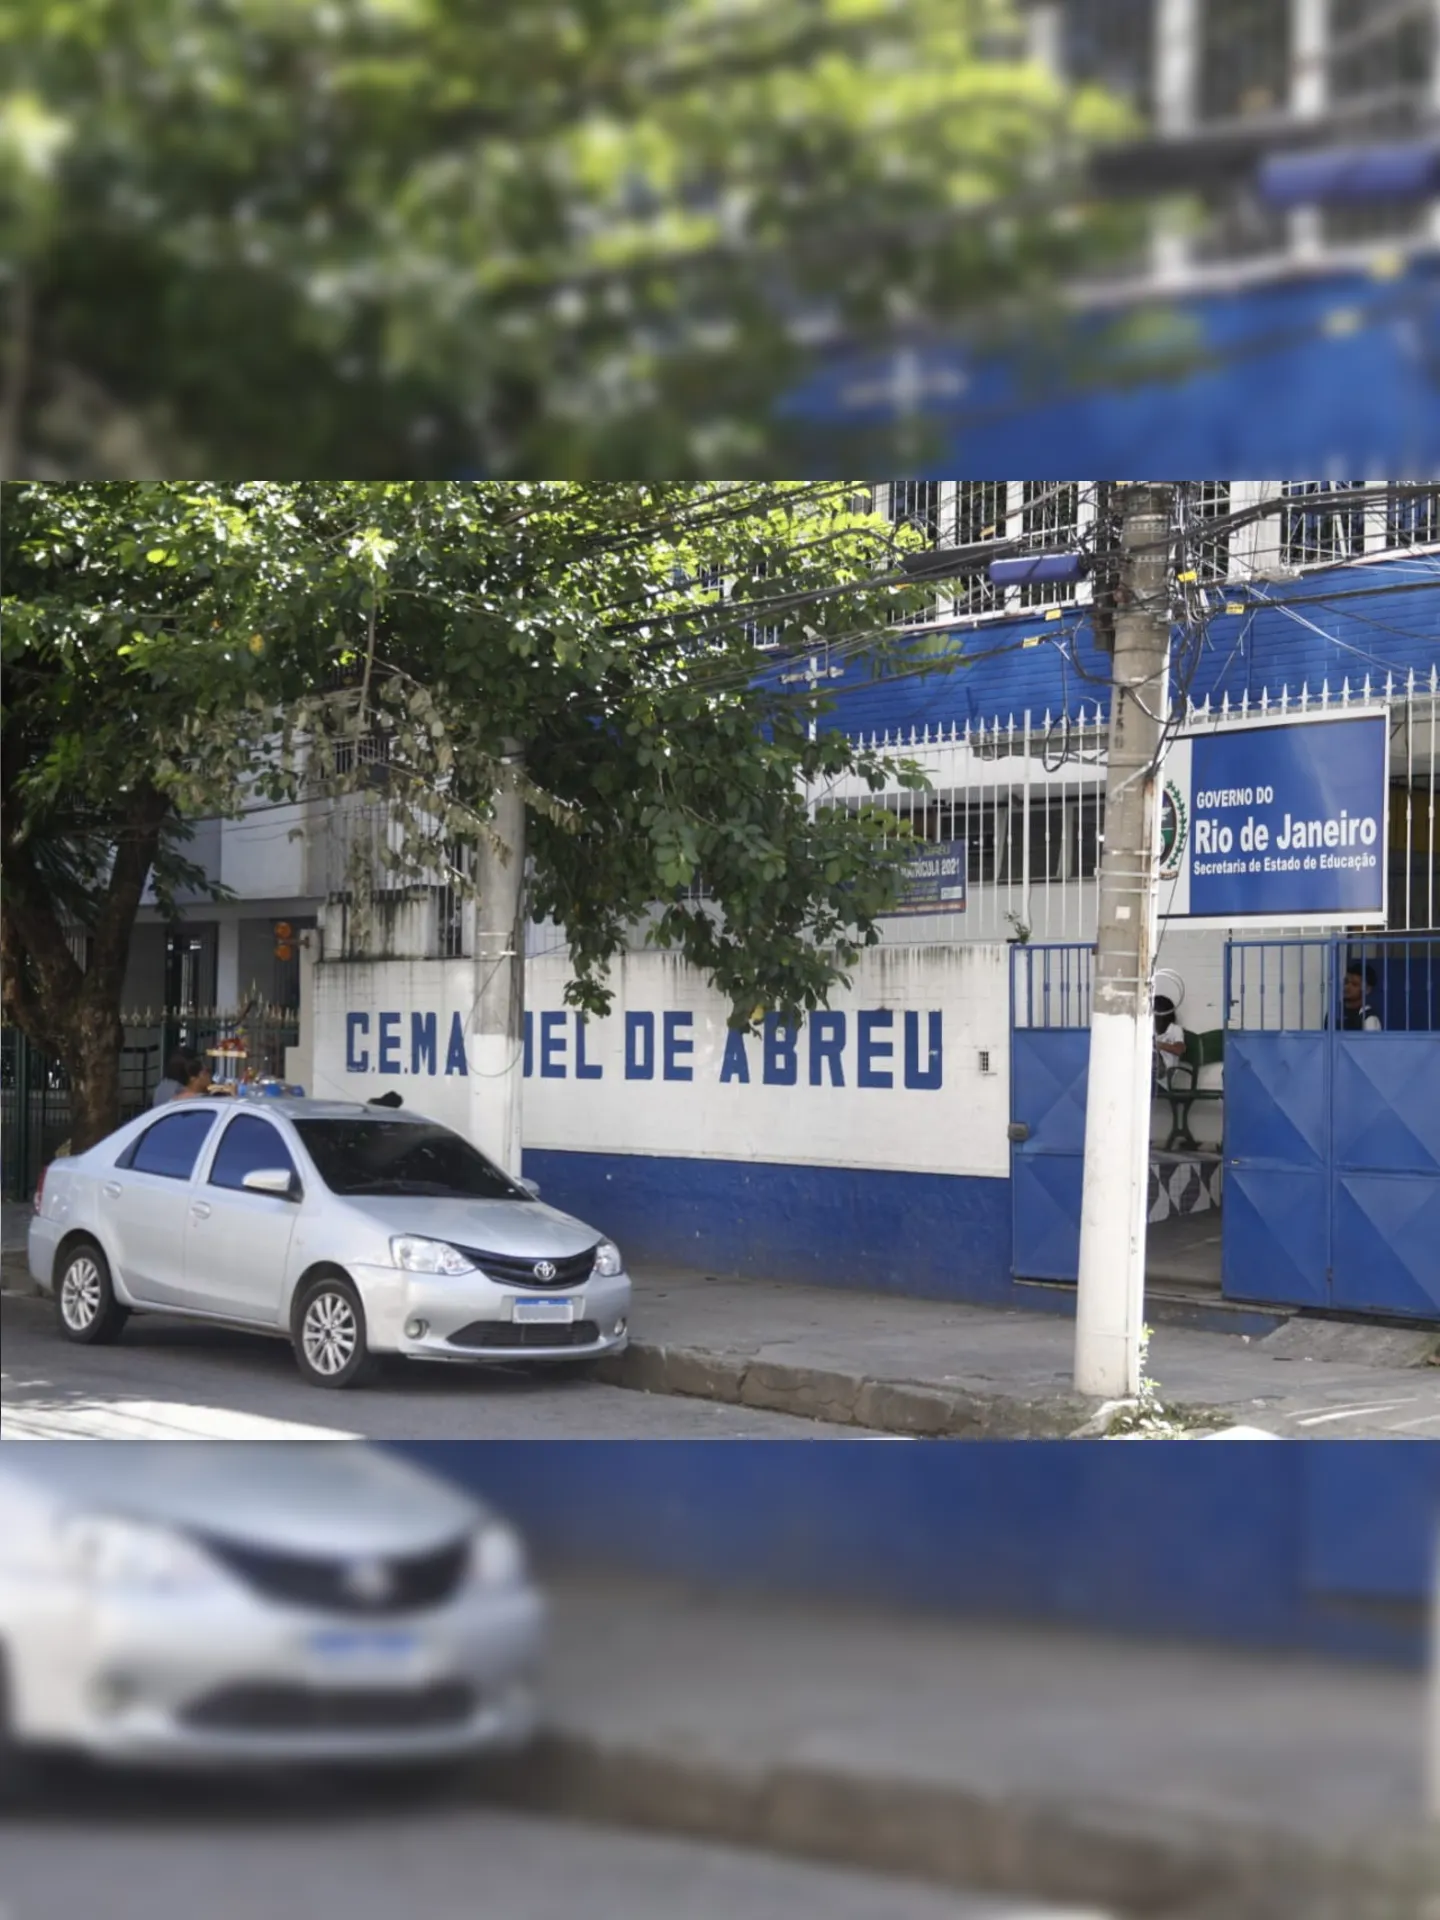 O caso ocorreu no Colégio Estadual Manuel de Abreu, em Niterói